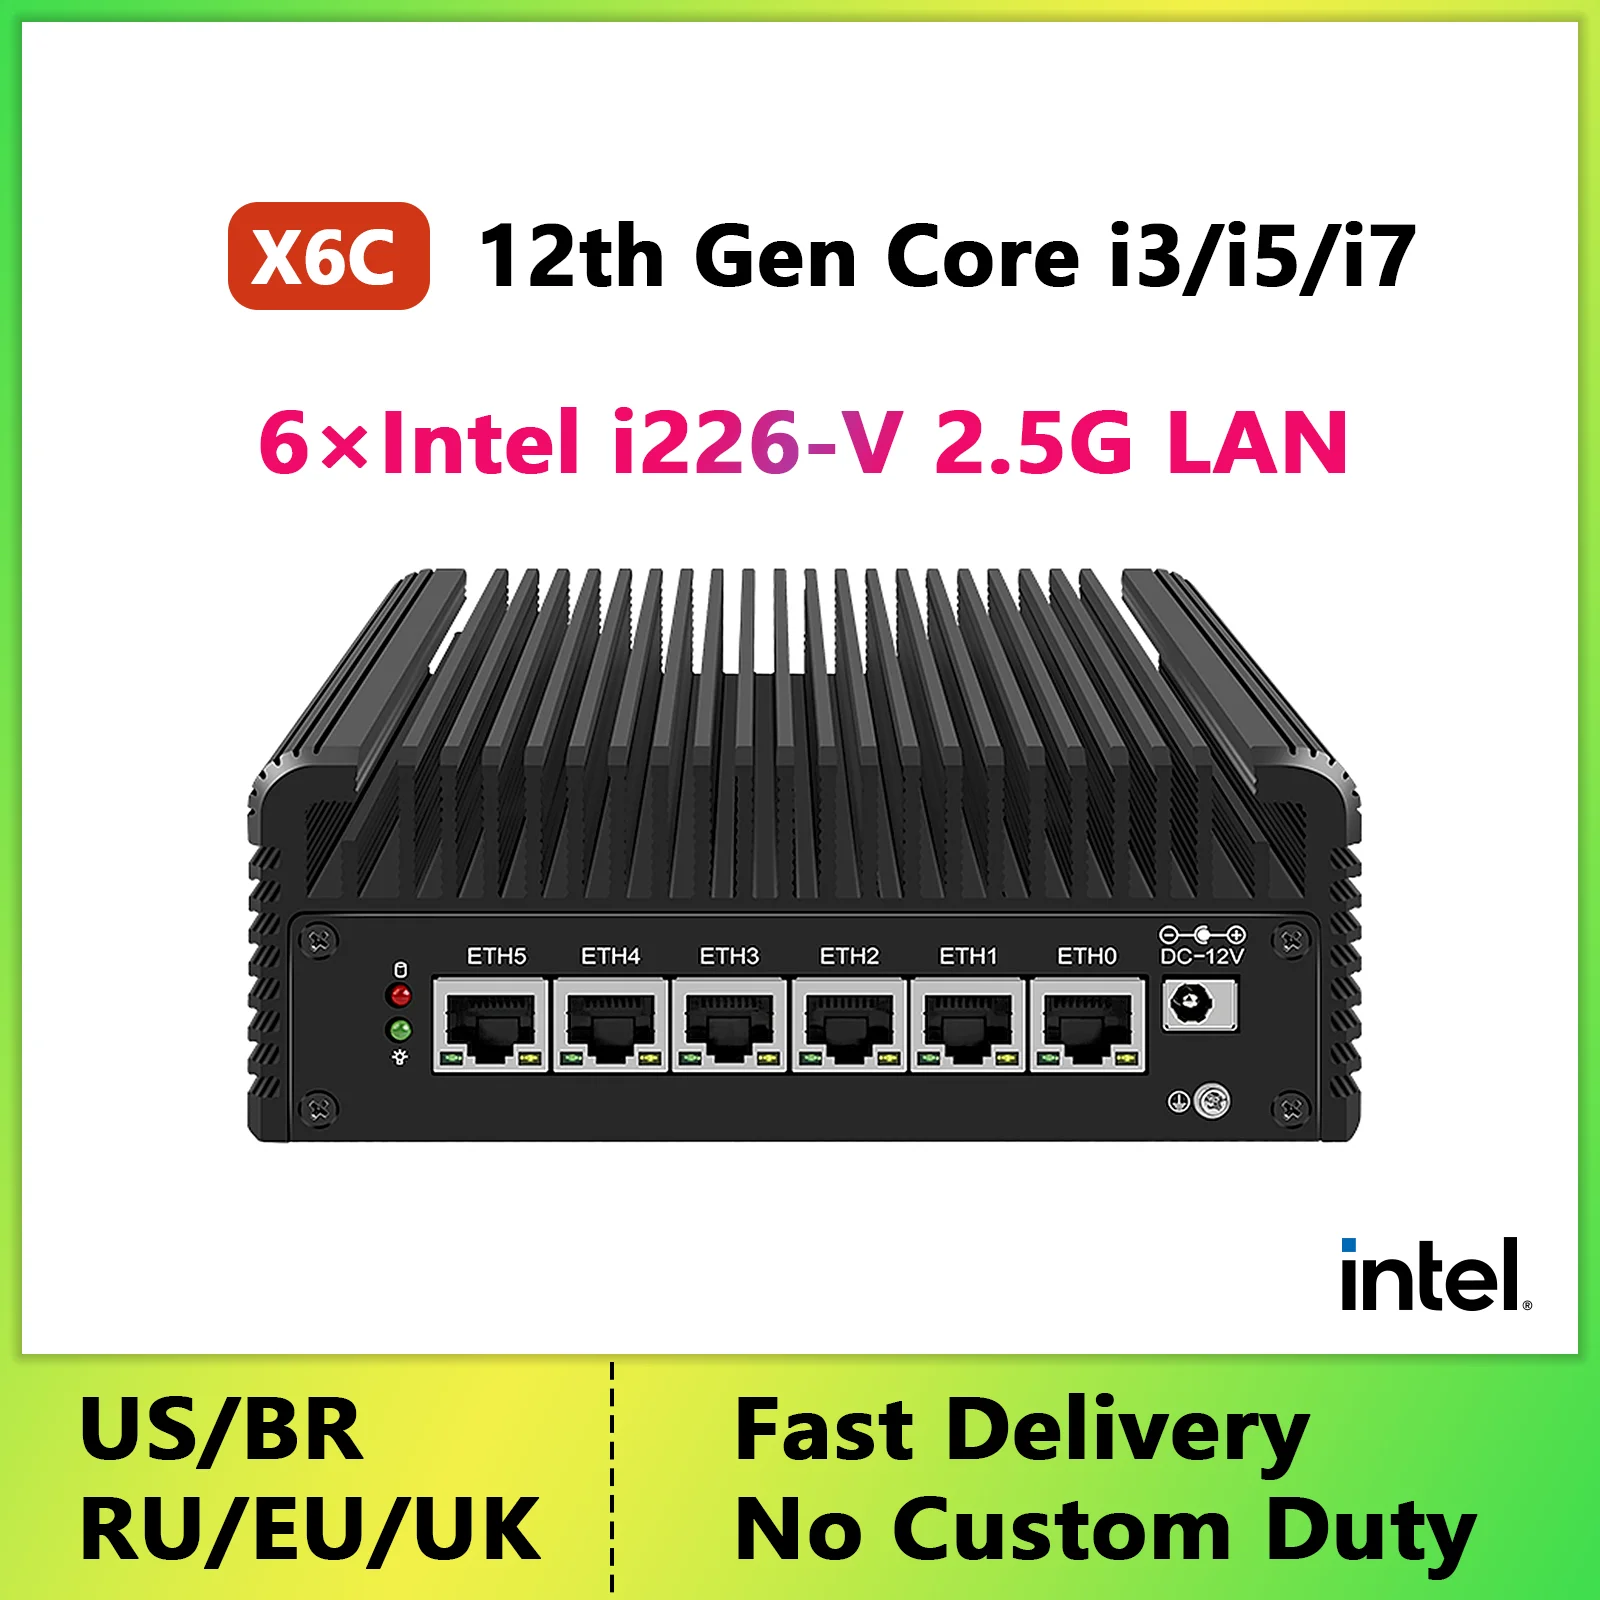 Fanless Mini PC 12th Core i7 i5 i3 Soft Router 6*Intel i226 2.5G LAN DDR4 3200MHz pfSense OPNsense VPN Firewall Appliance